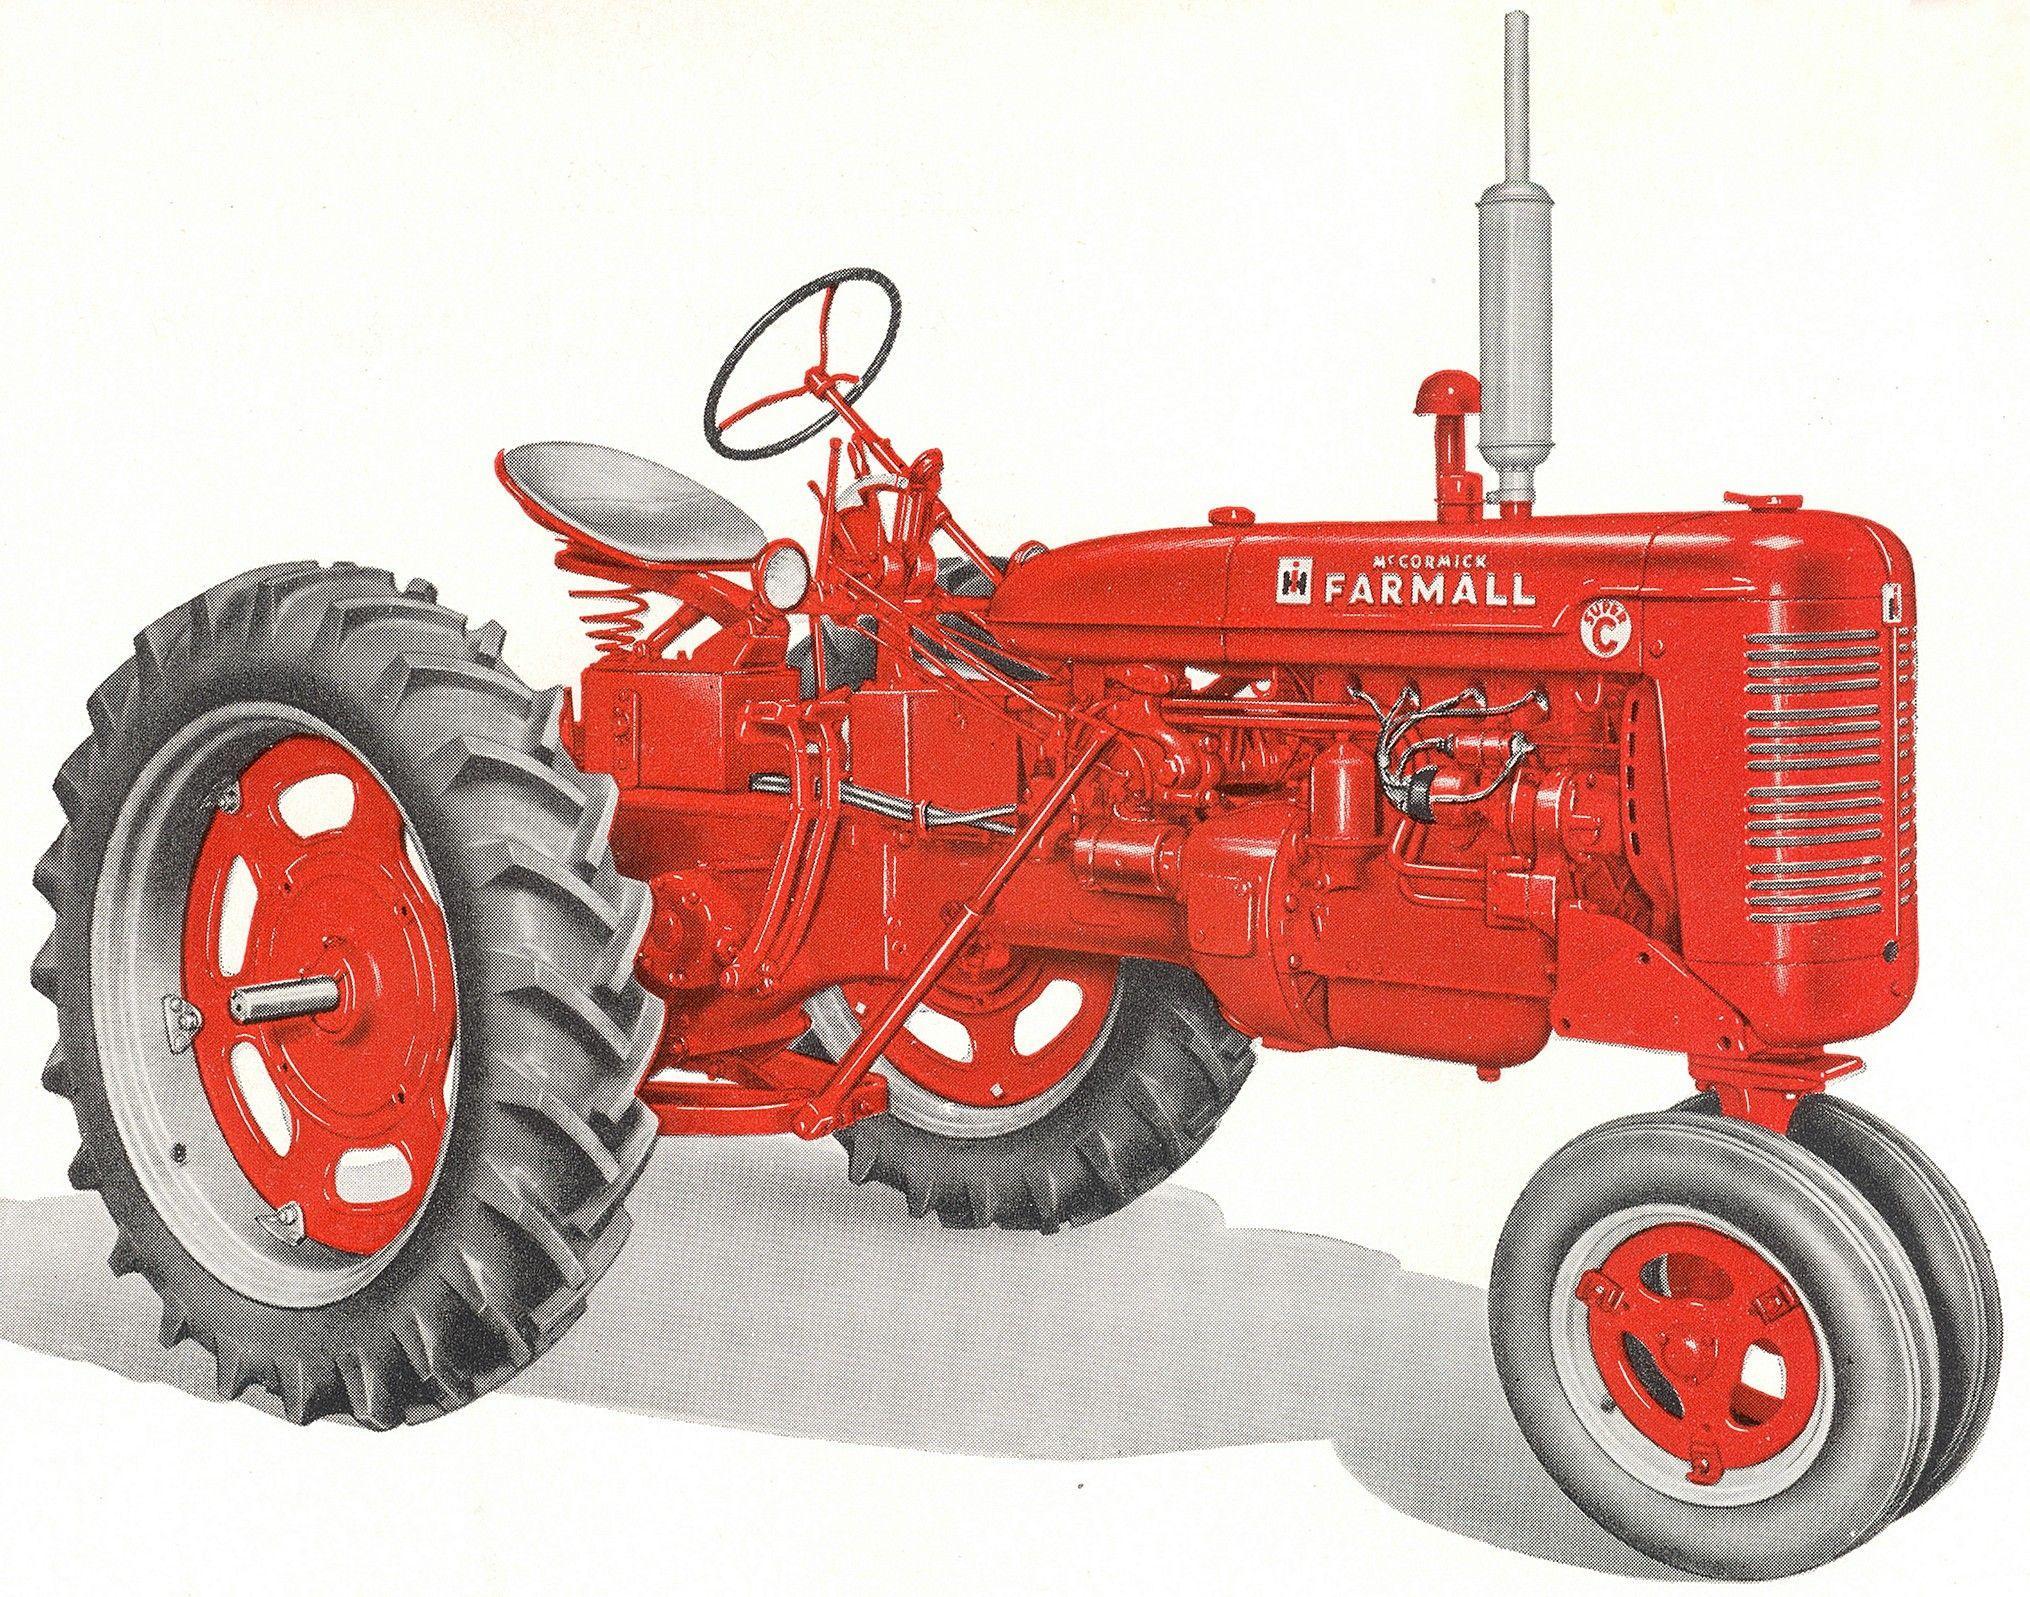 Farmall Tractor wallpaper, Vehicles, HQ Farmall Tractor picture